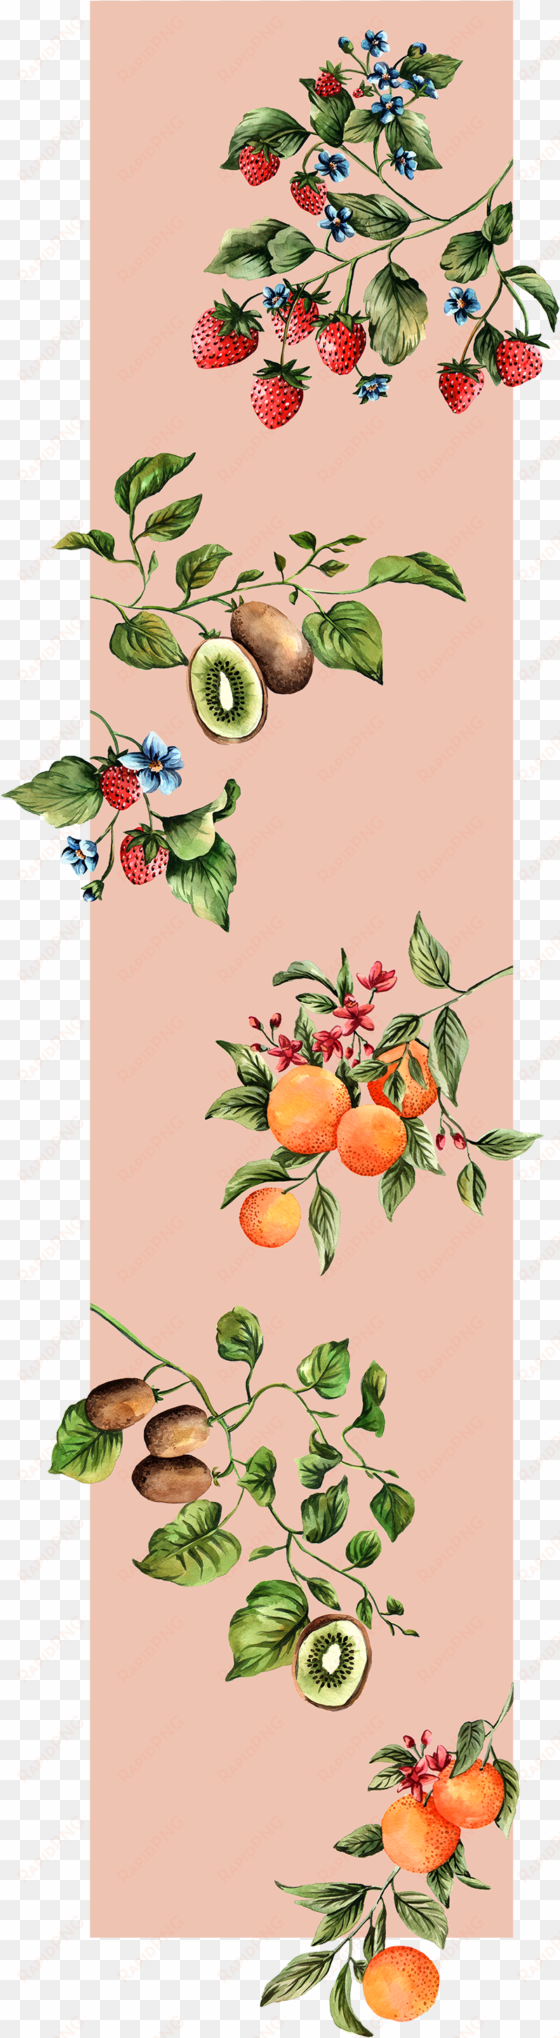 paula hasenack-fruits - fruit